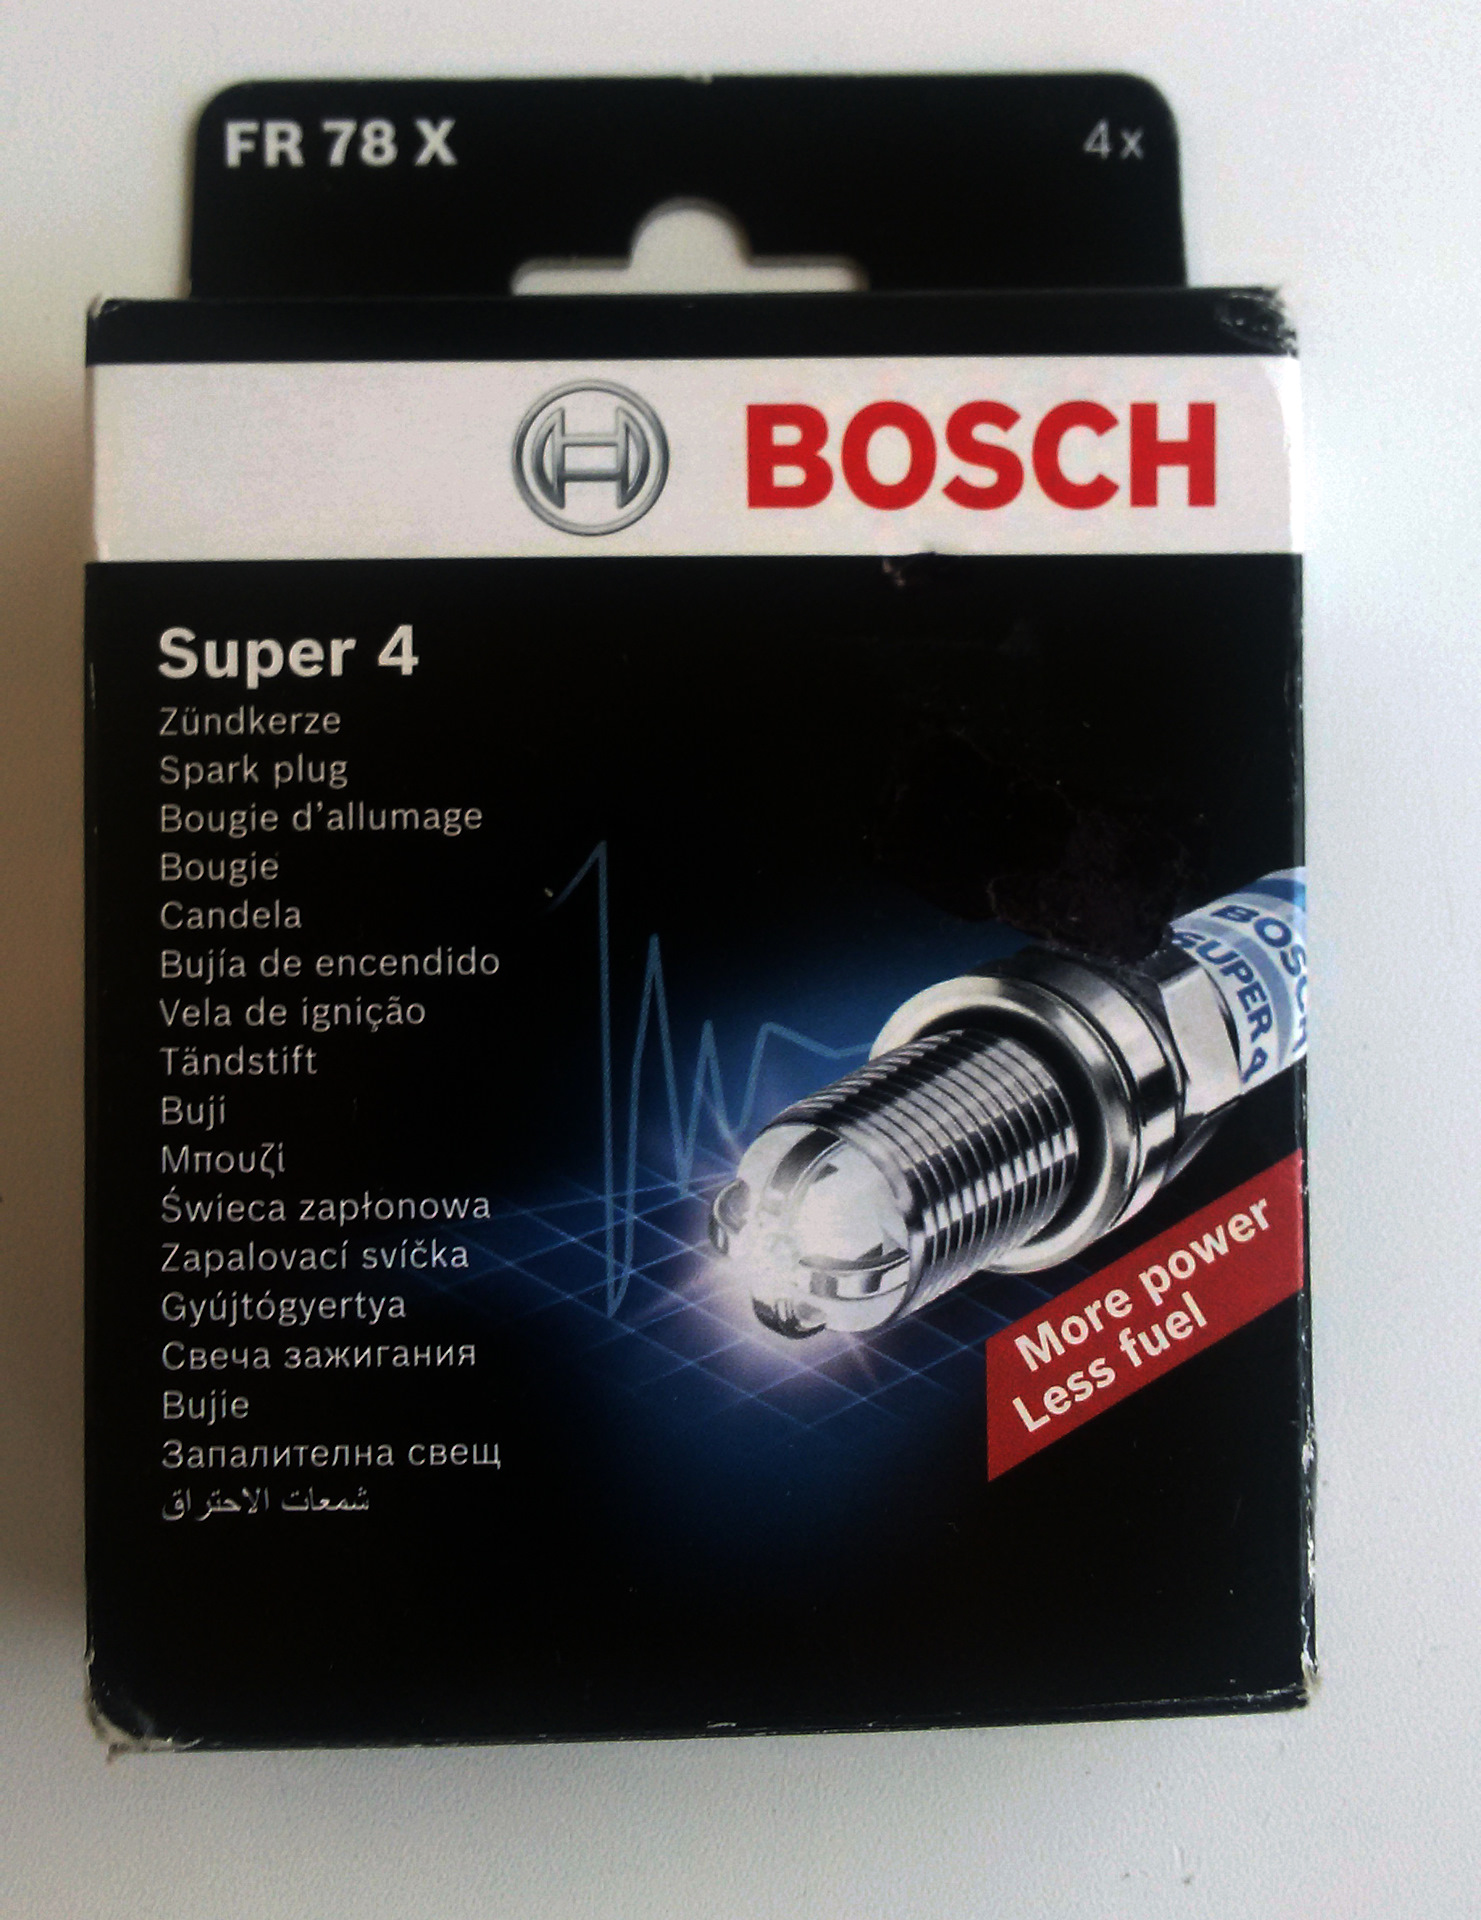 Bosch super 4. Свечи зажигания четырехэлектродные Bosch. Свечи бош супер 4. Bosch super 4 для ВАЗ. Свечи бош супер + 2 контактные.